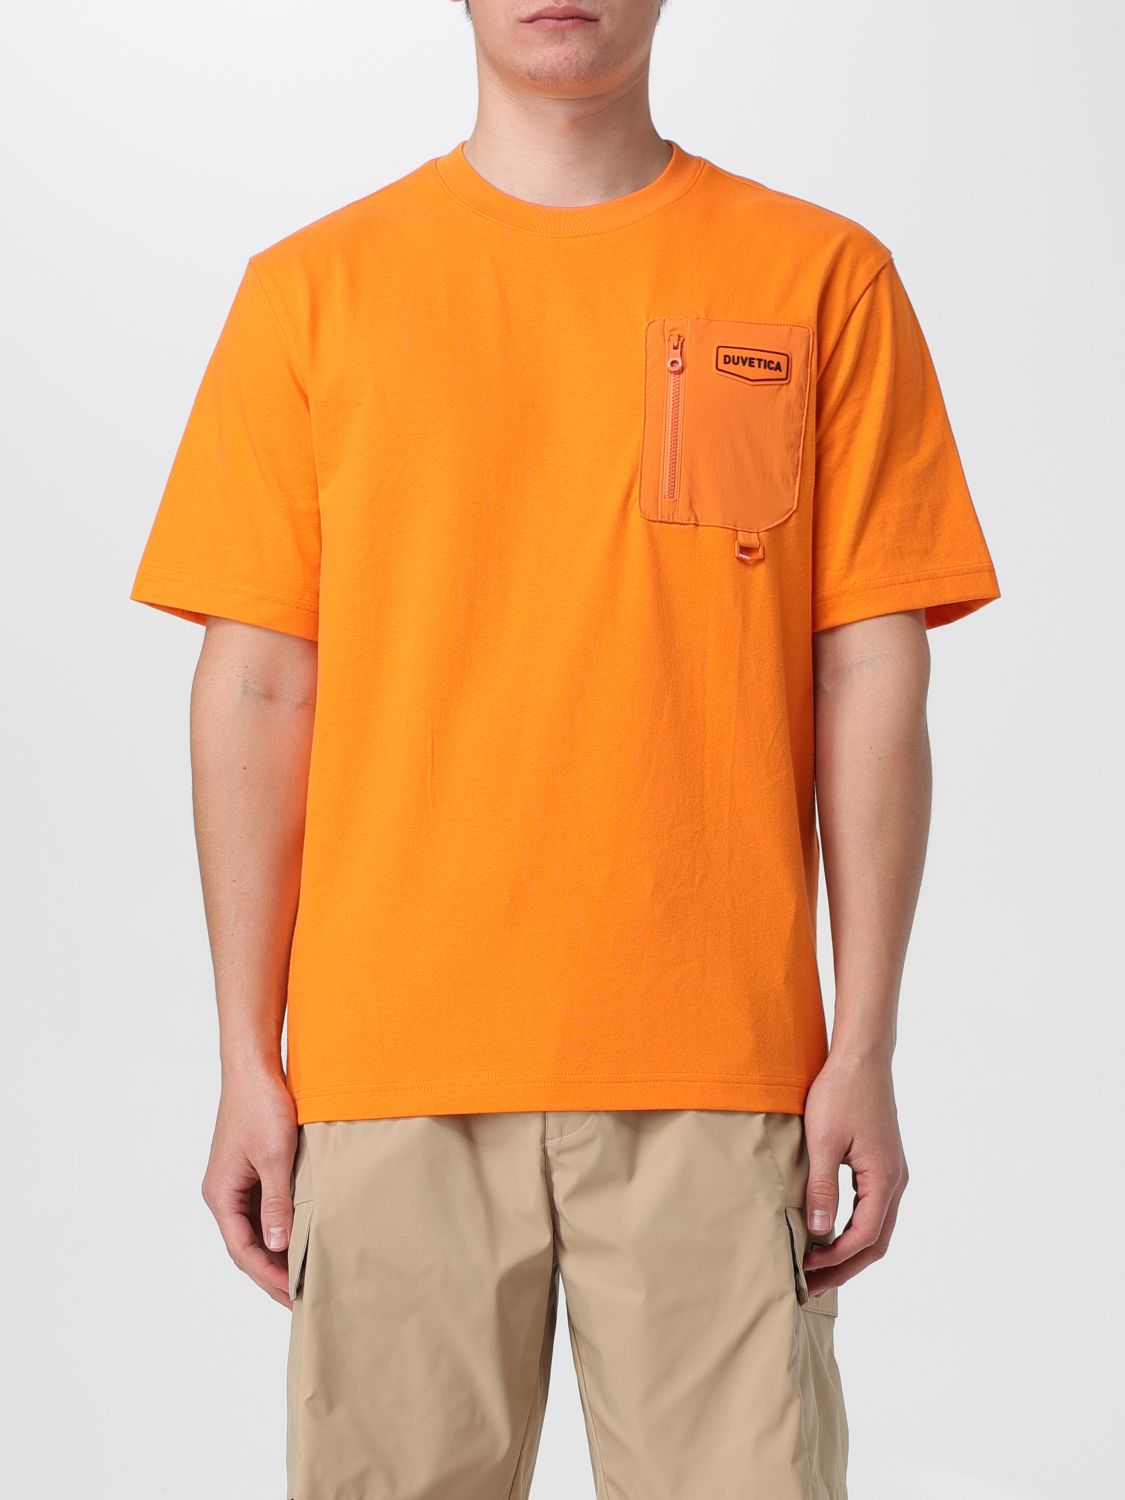 Duvetica T-Shirt DUVETICA Men colour Orange